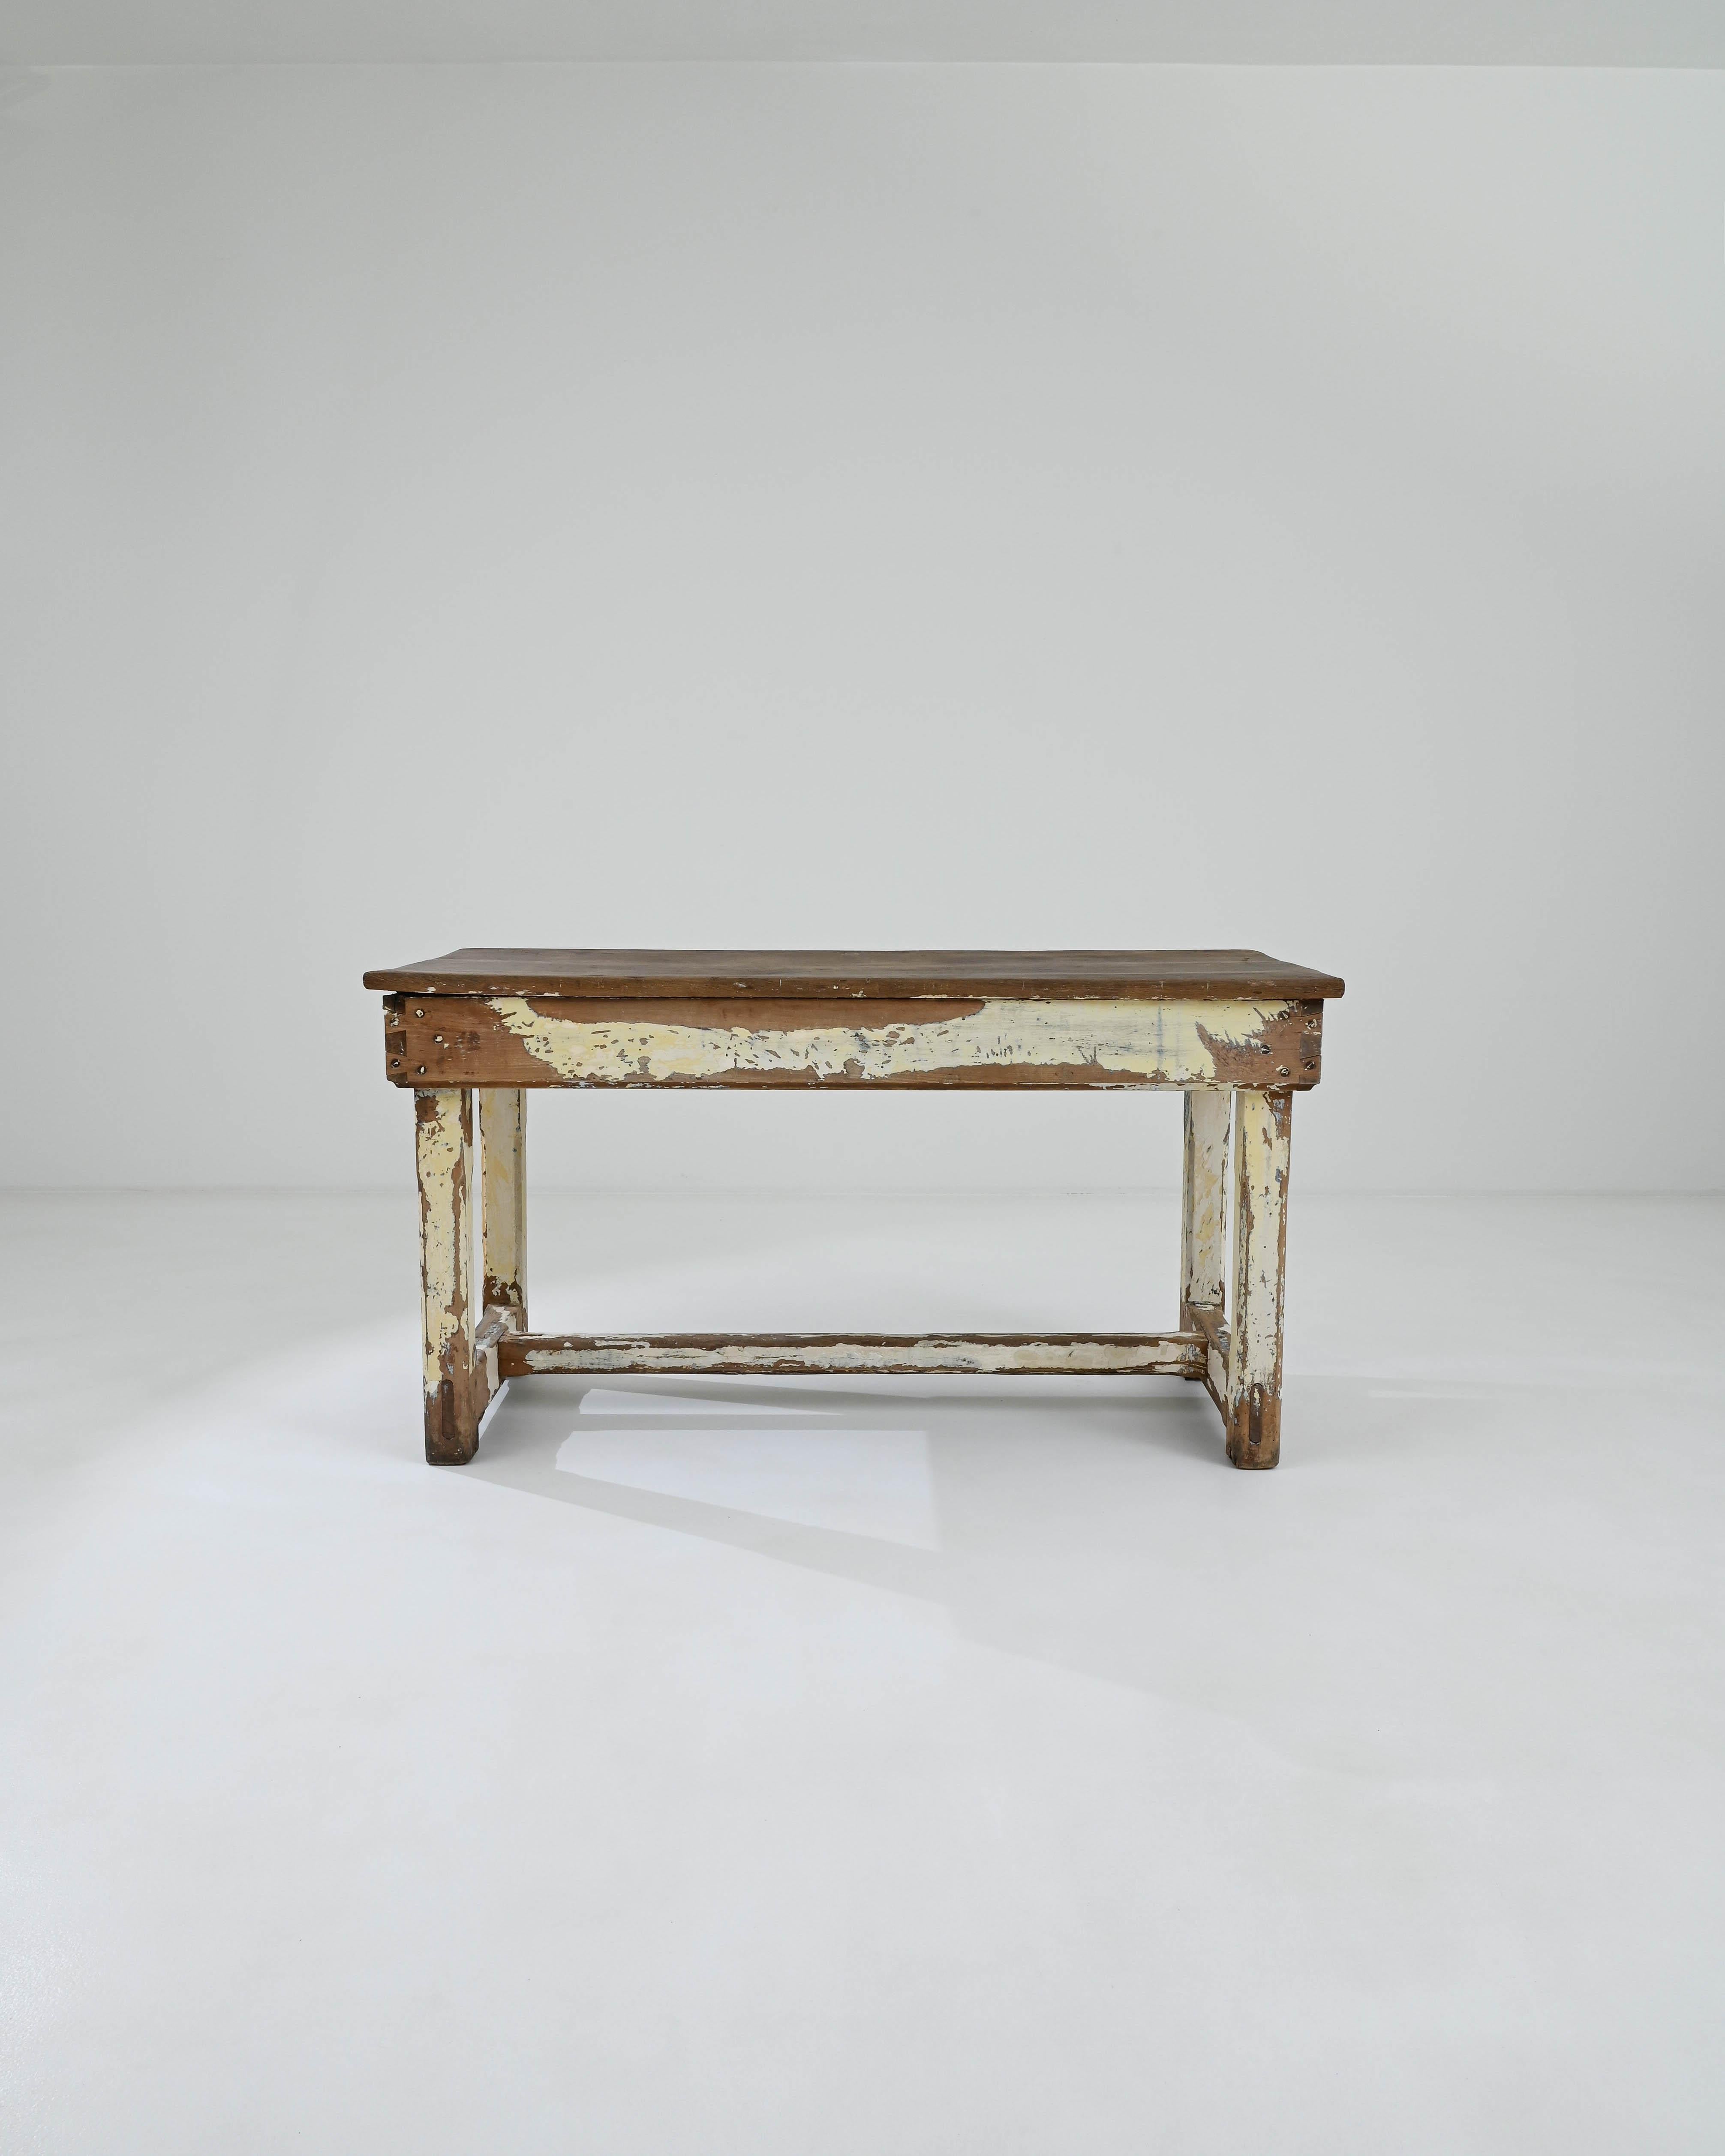 Dieser Holztisch aus Frankreich (um 1900) ist eine charmante Unterlage für alle Arten von Hausarbeiten. Der im Laufe der Zeit dramatisch gealterte Tisch strahlt eine gemütliche Ausstrahlung aus und lädt dazu ein, seine faszinierenden Details zu